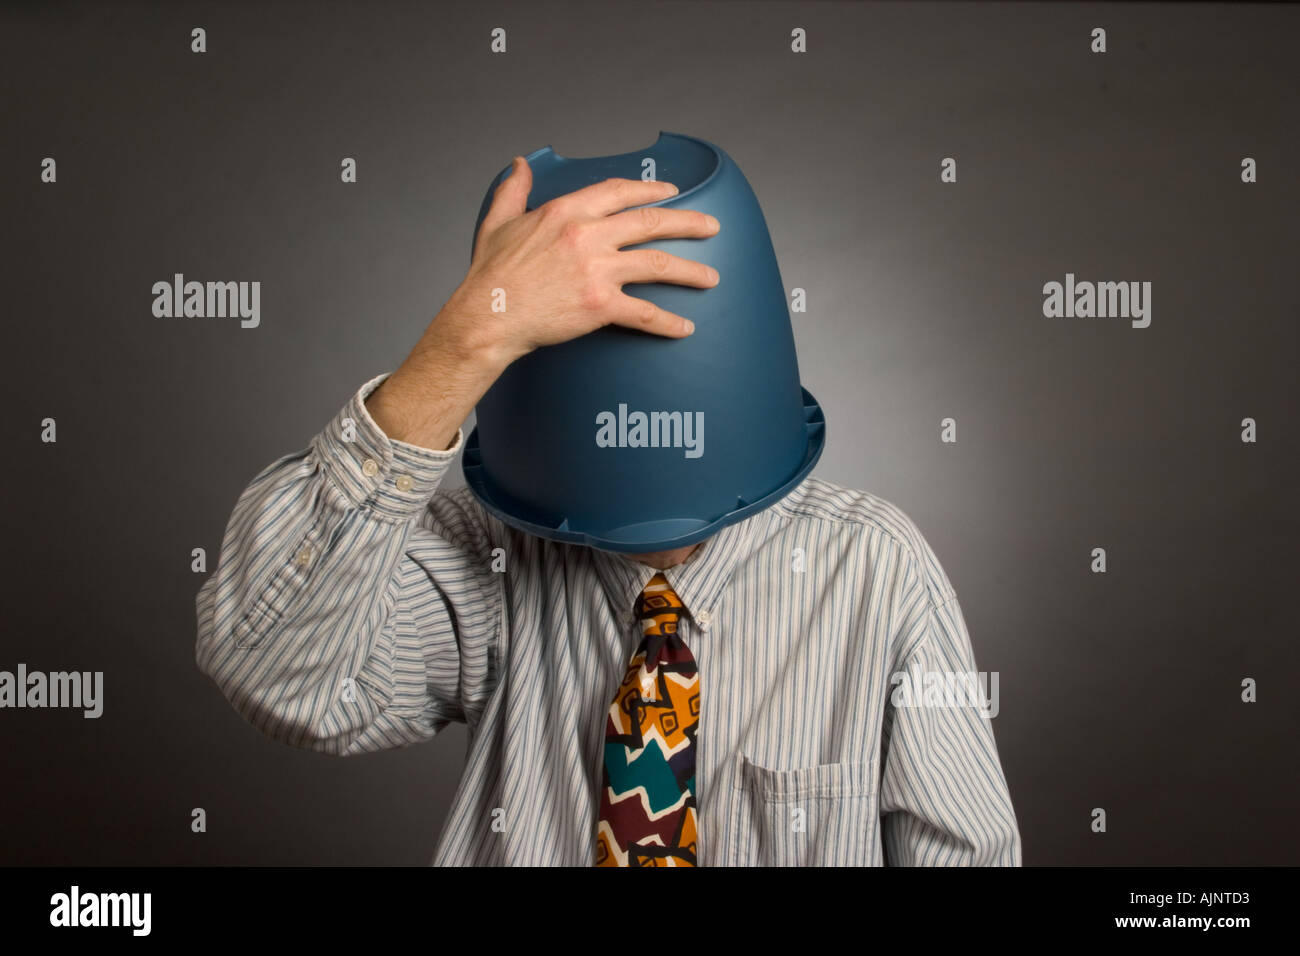 Mann mit einem Eimer auf dem Kopf Stockfotografie - Alamy